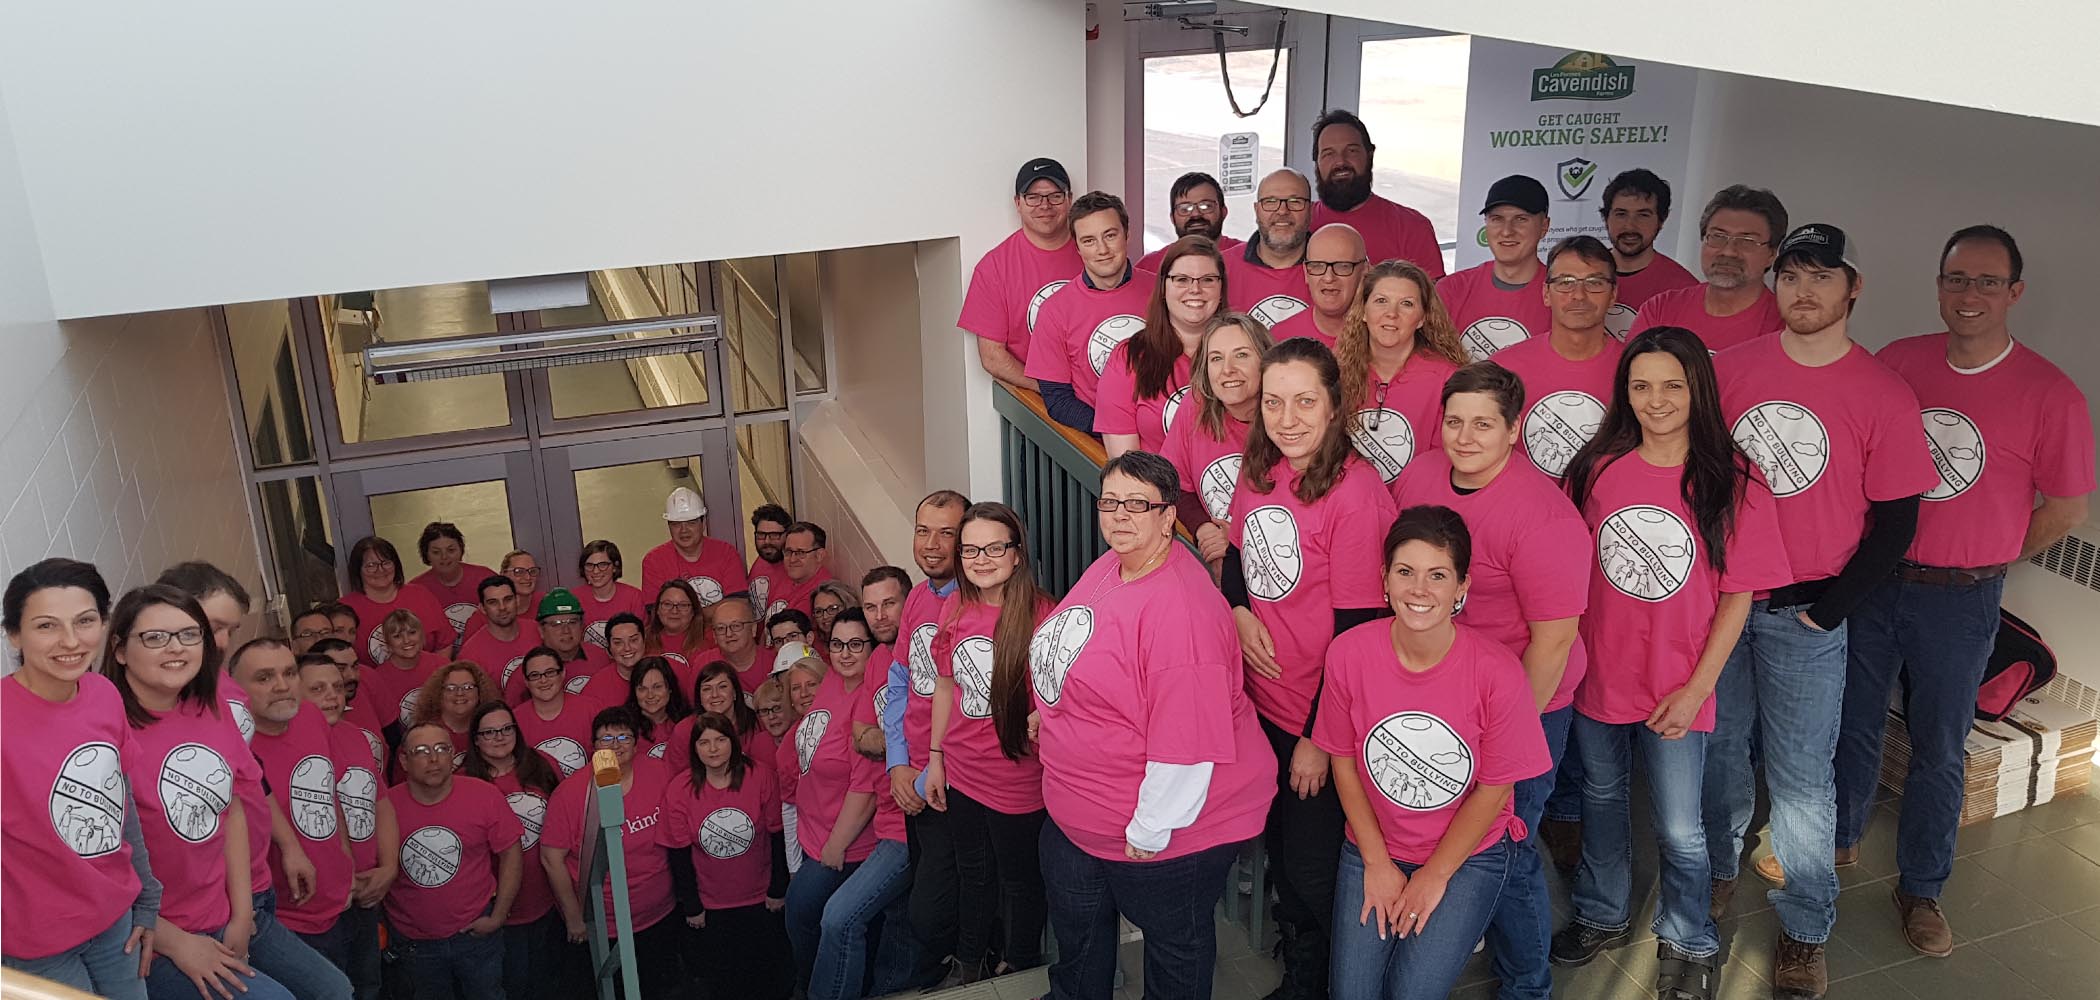 Les employés de l'usine des Fermes Cavendish à New Annan ont participé à la Journée nationale du chandail rose contre l'intimidation.